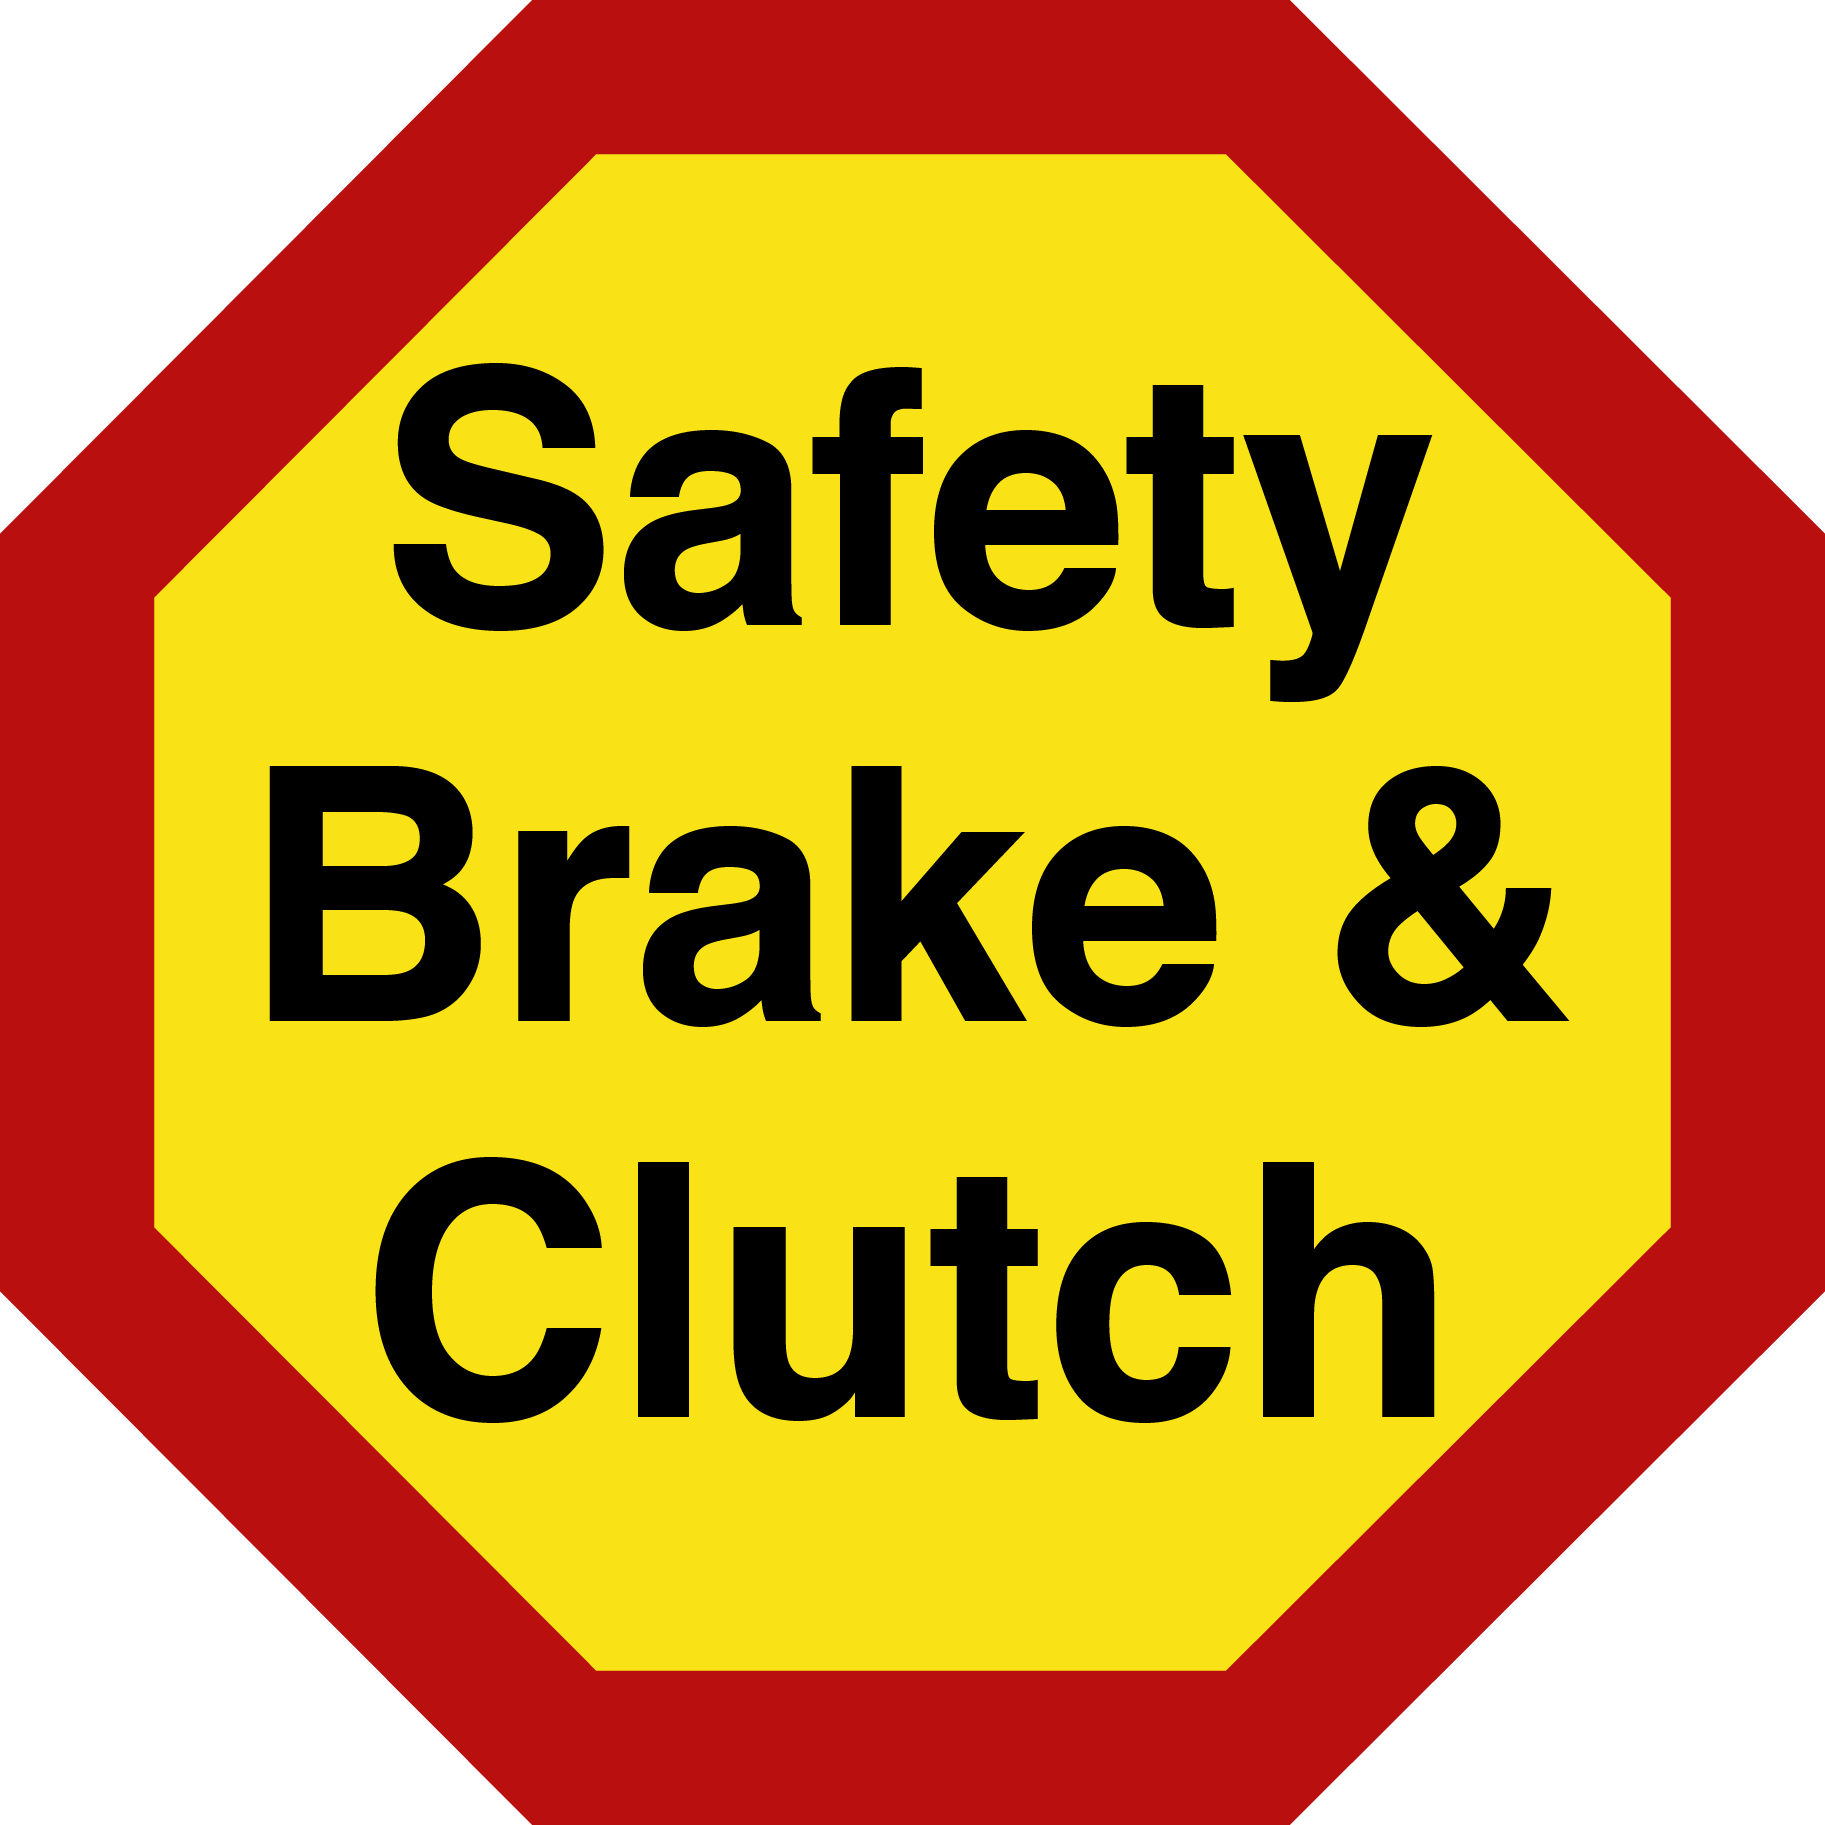 Safety Brake & Clutch